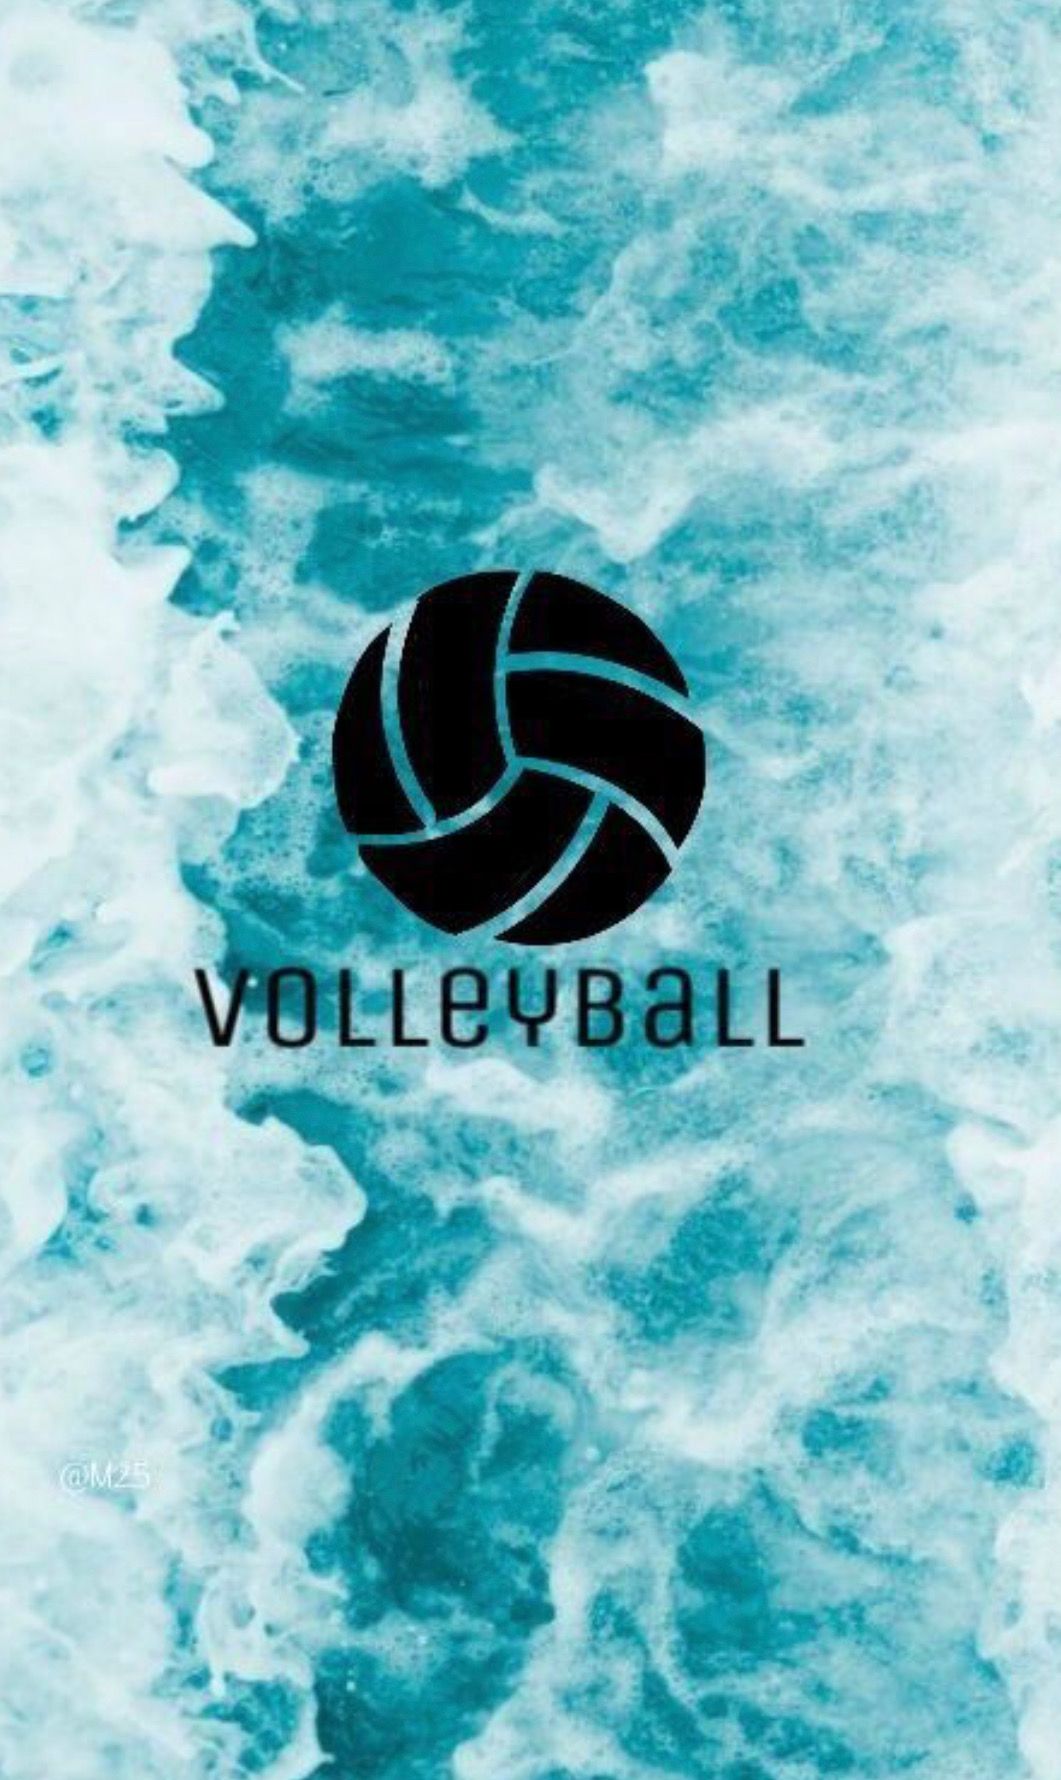 Beach volleyball : 68.629 ảnh, hình ảnh có sẵn và ảnh miễn phí bản quyền |  Shutterstock